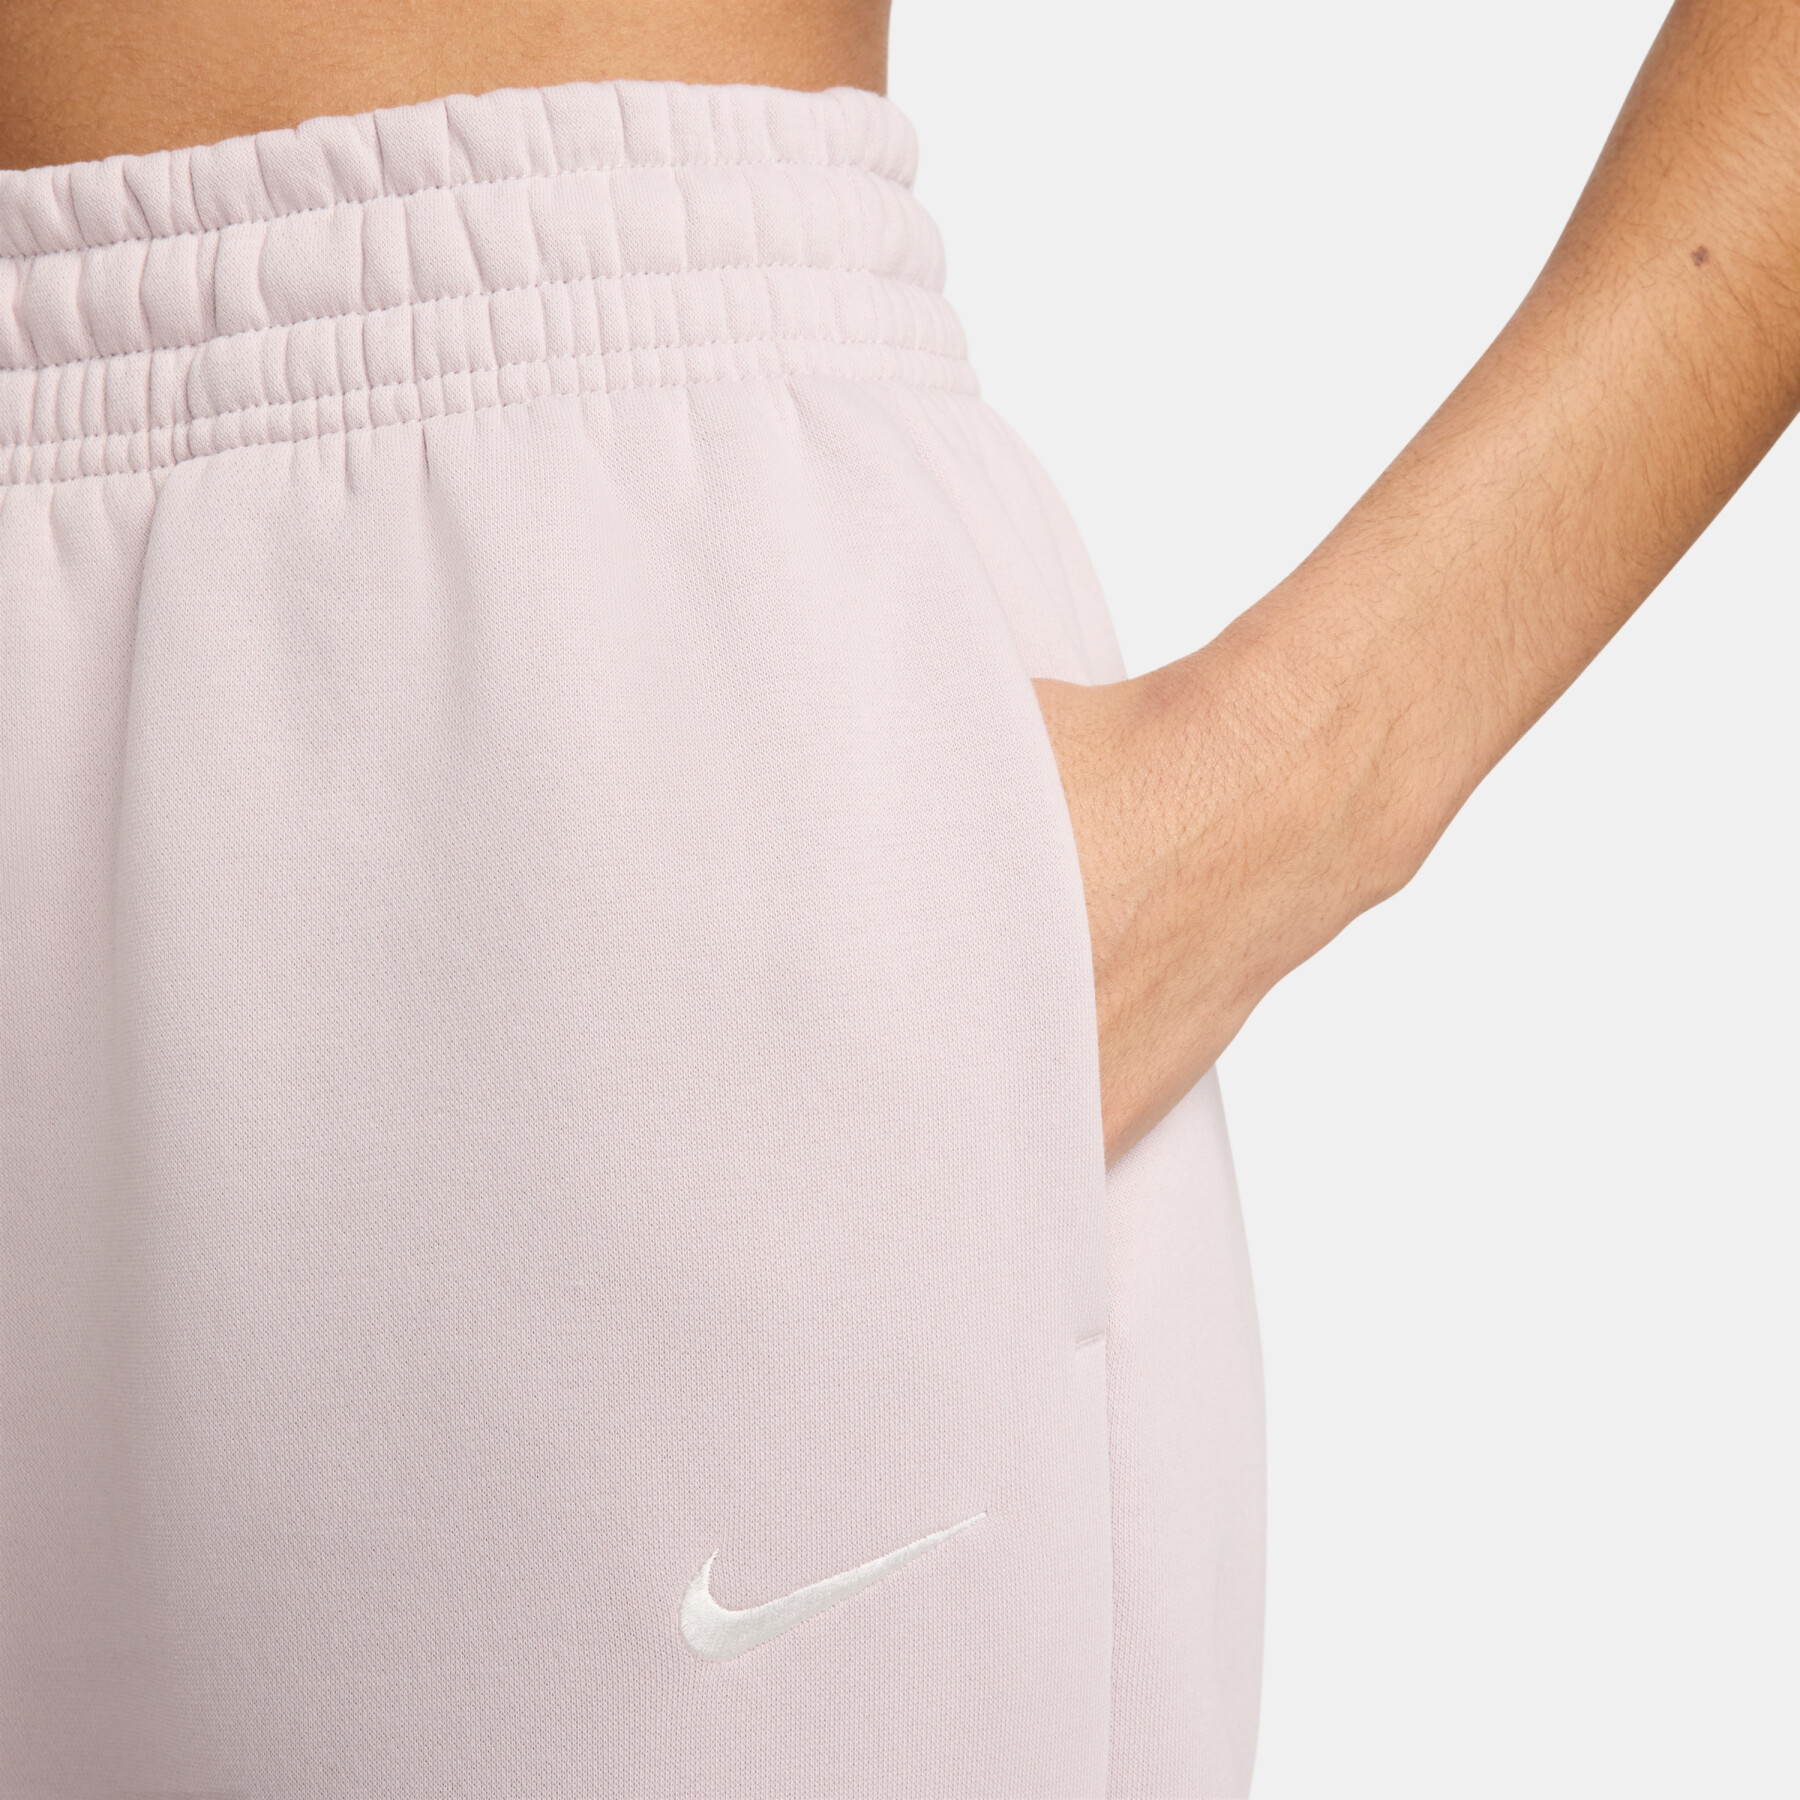 Dames oversized joggingbroek met hoge taille Nike Phoenix Fleece